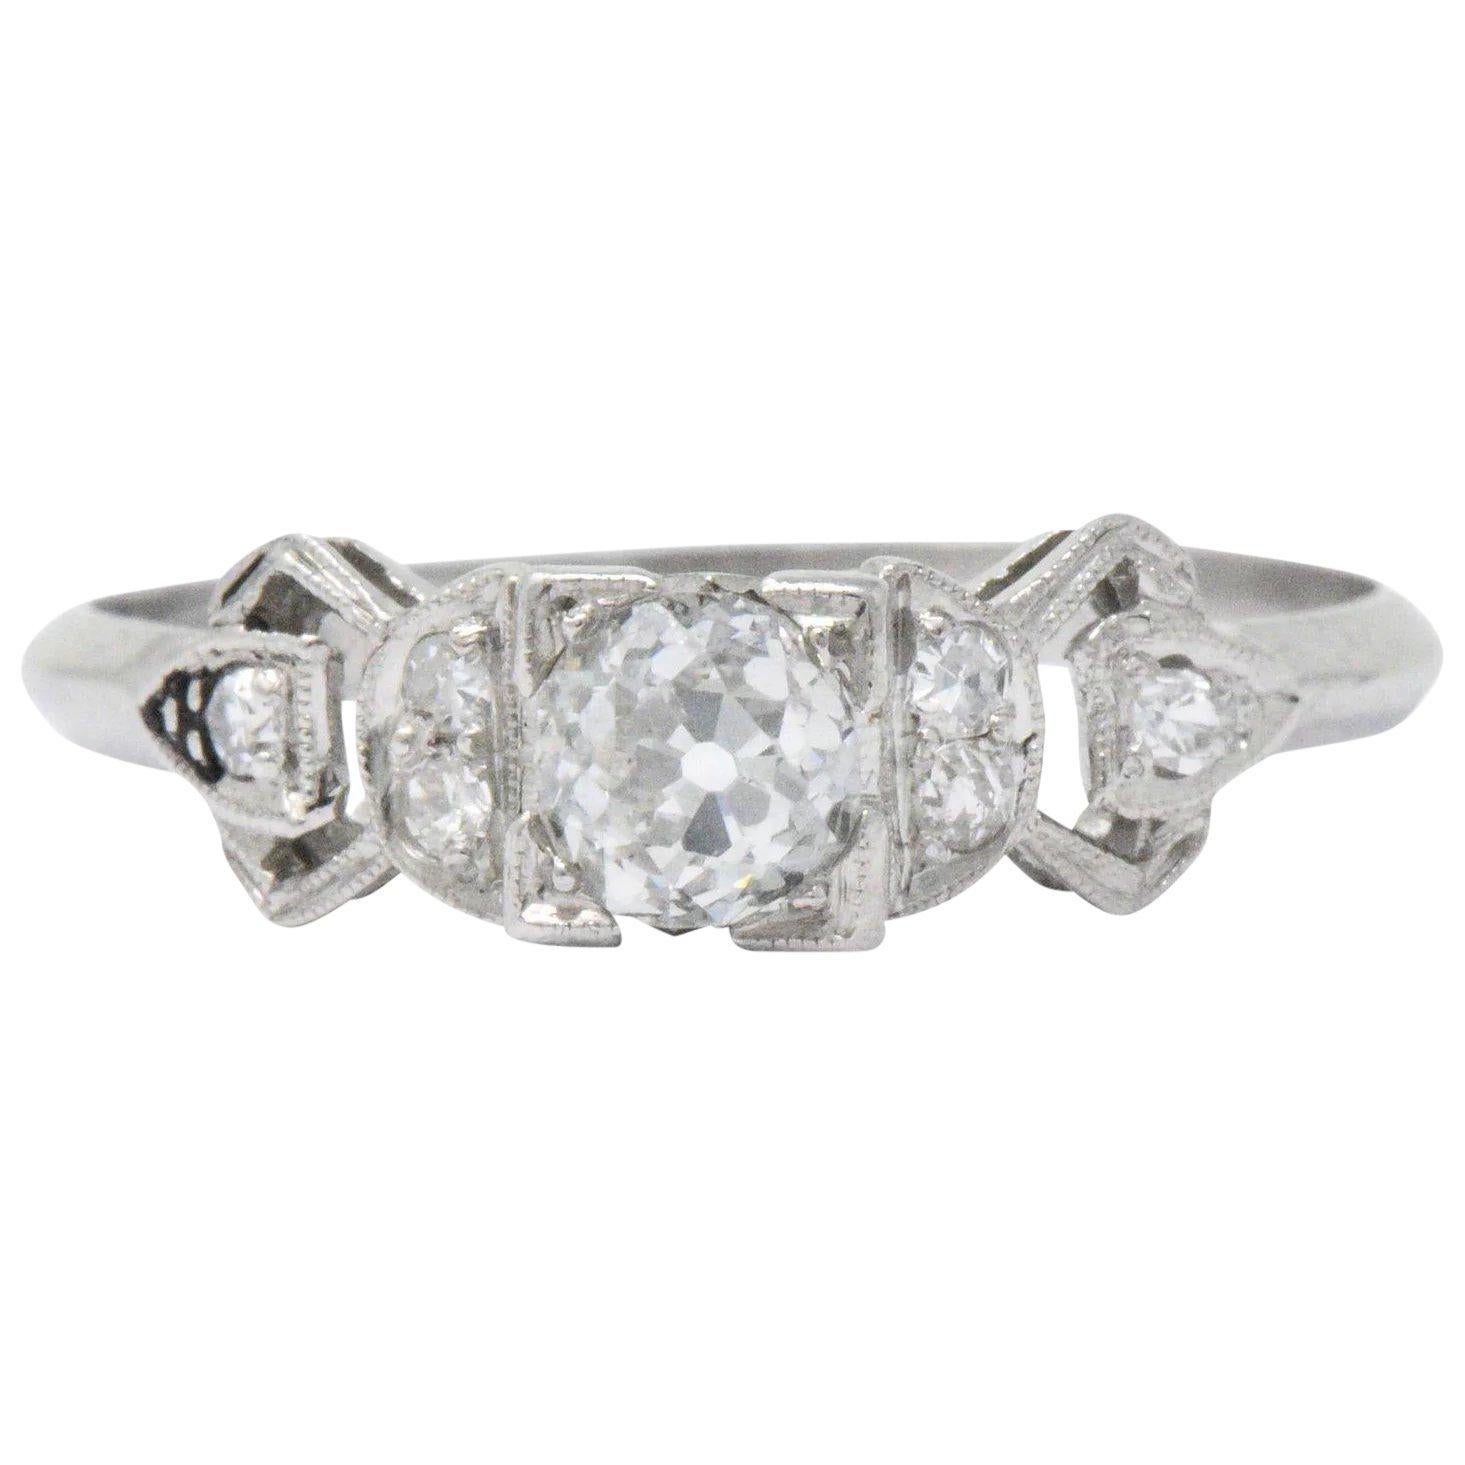 Delightful Art Deco .48 CTW Diamond & Platinum Alternative Engagement Ring